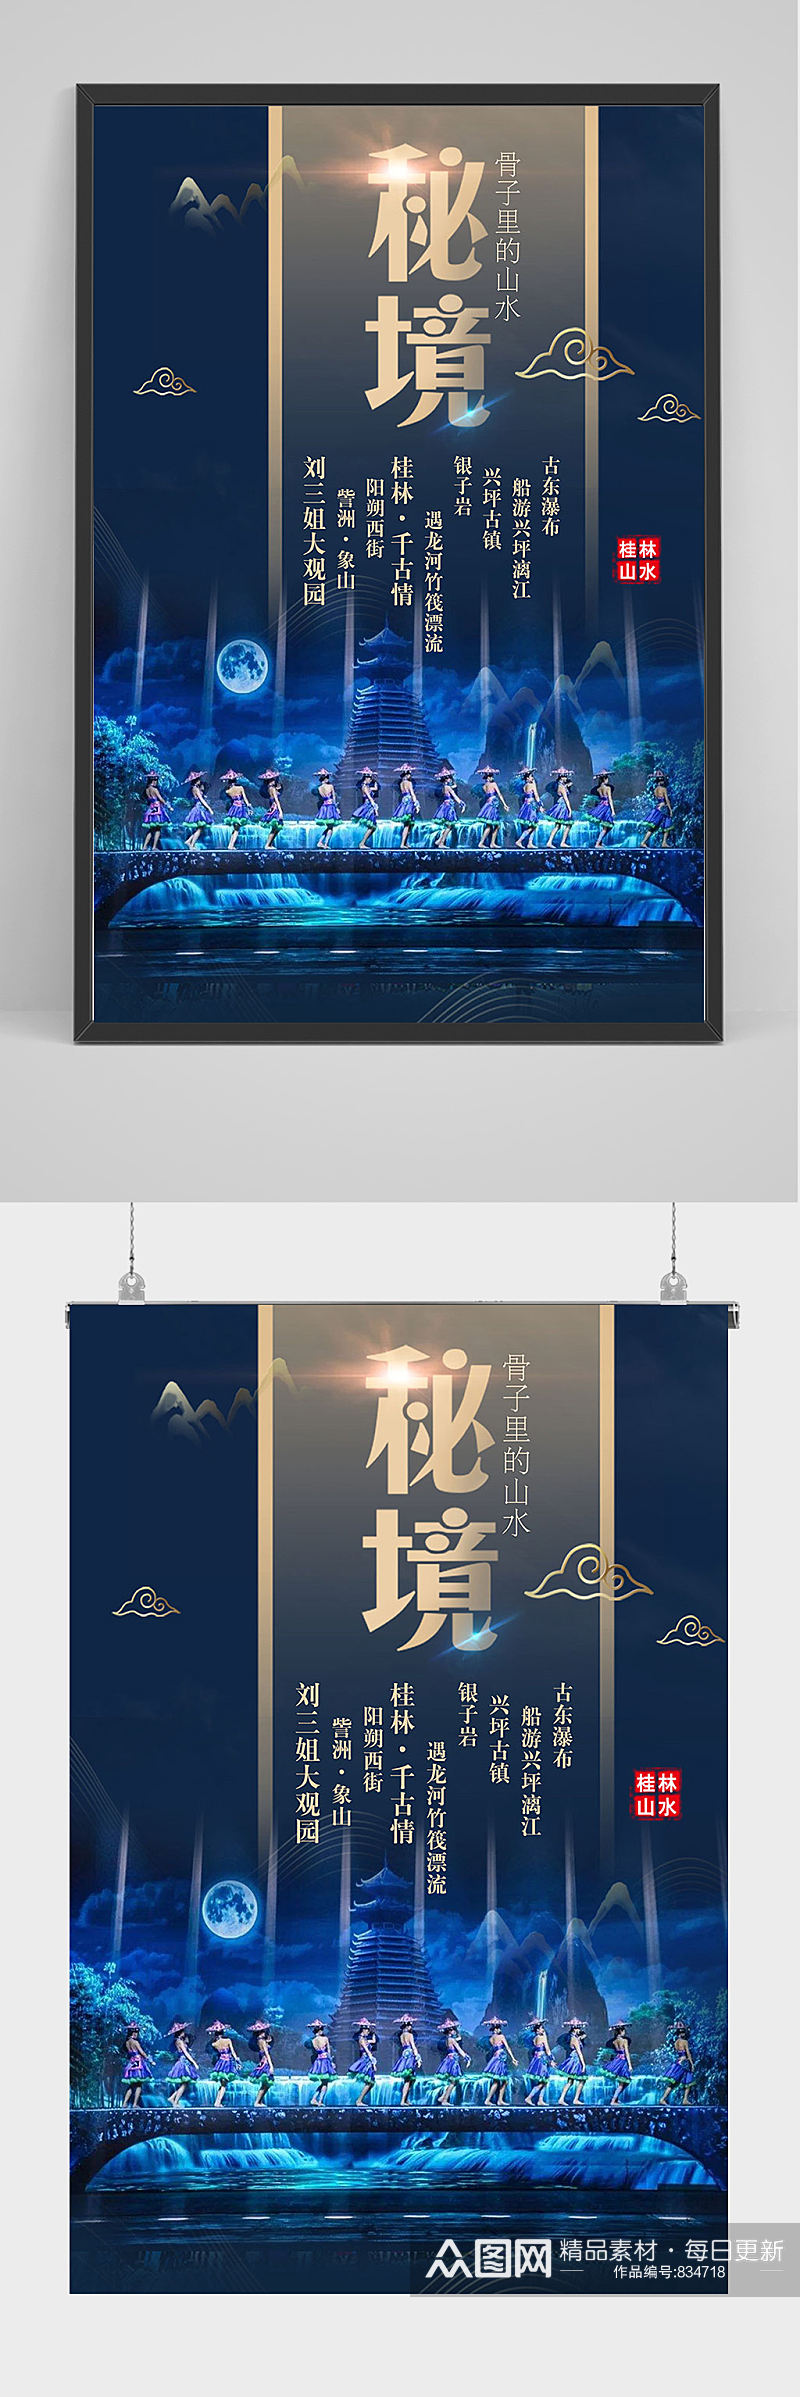 桂林山水桂林旅游海报设计素材